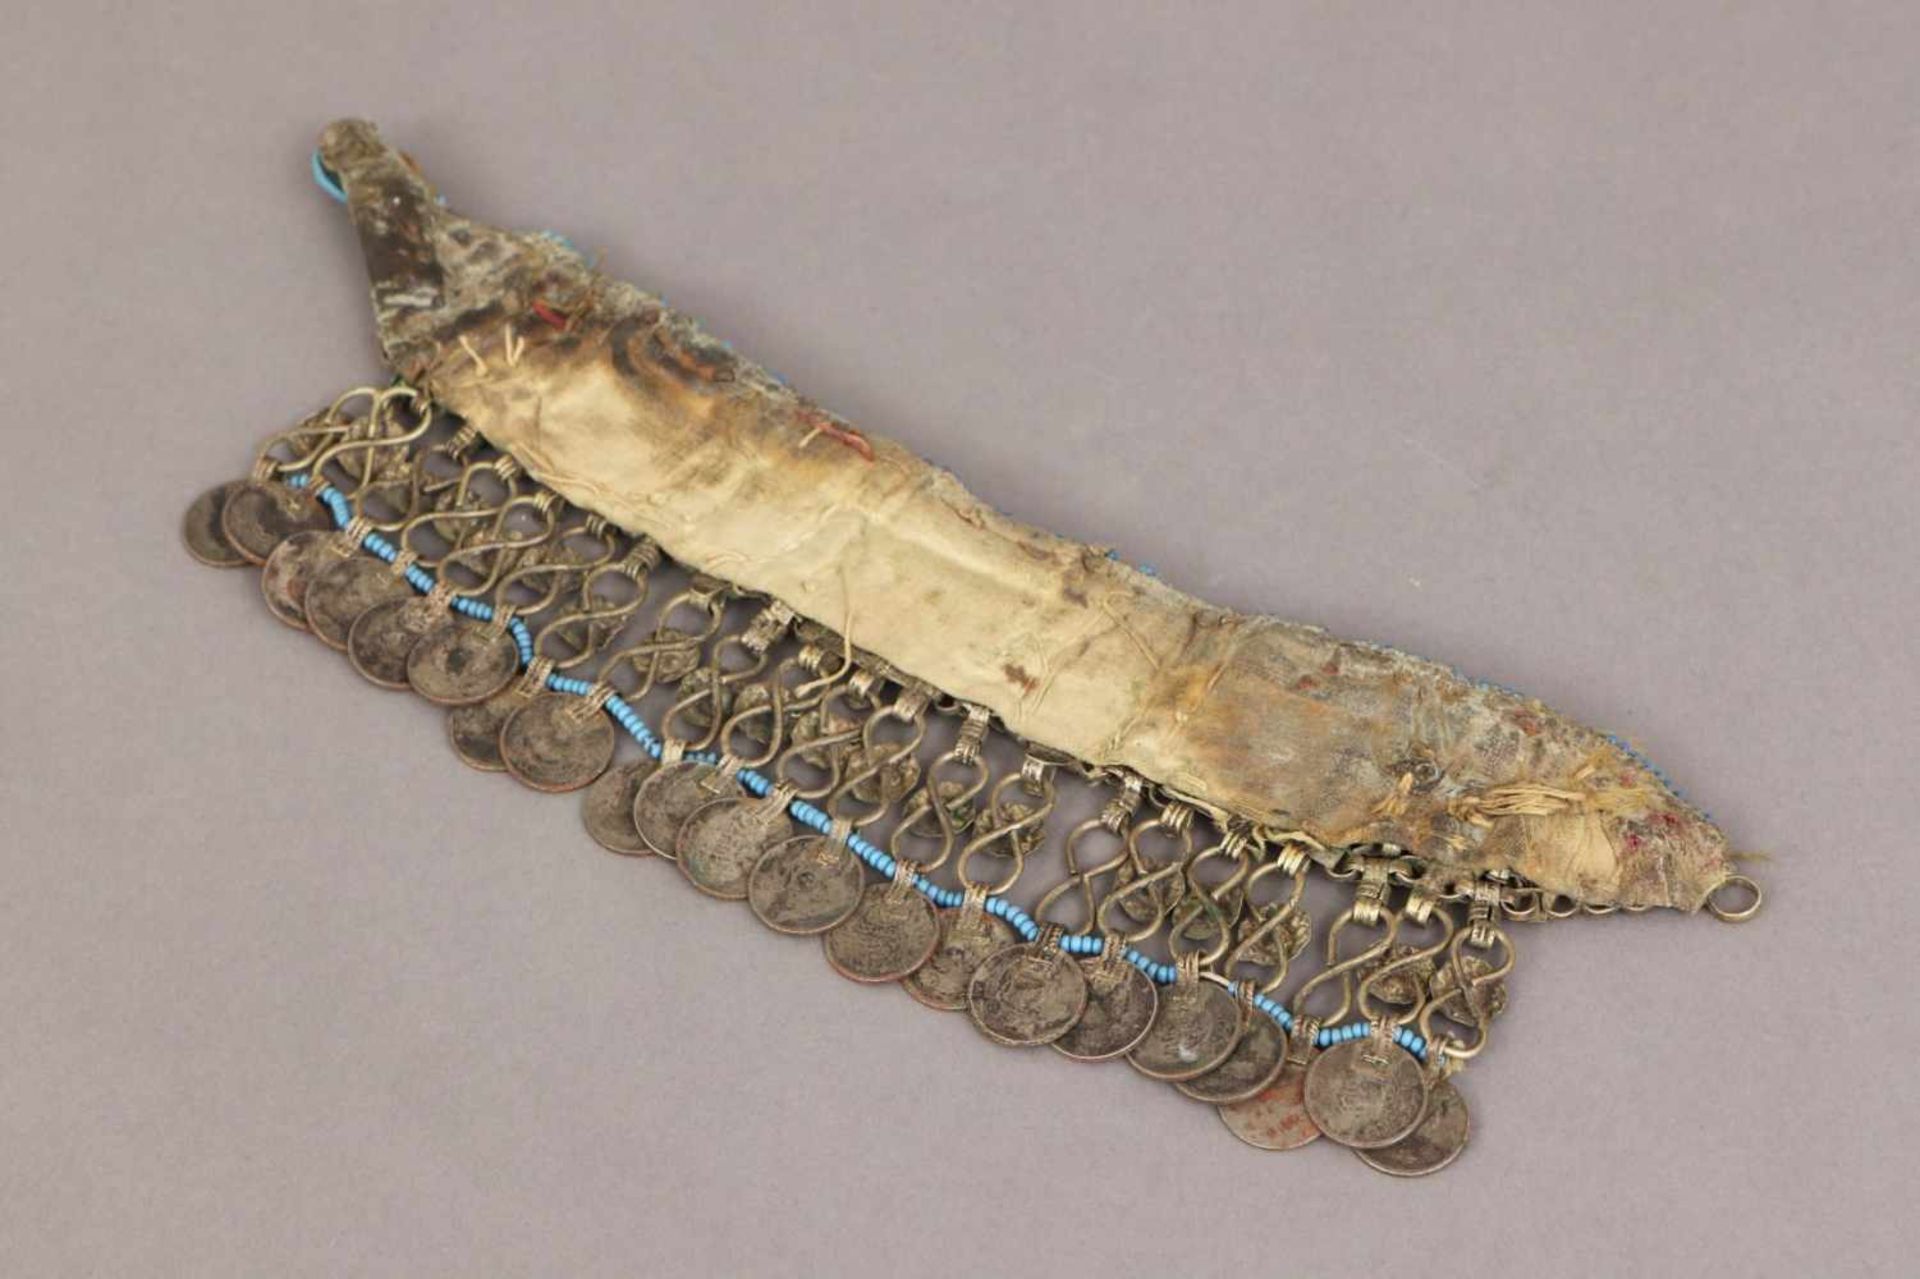 Arabisch-orientalischer Trachtengürtel/Collier mit MünzbehangSilberdraht, Blech, Glas und - Bild 2 aus 2